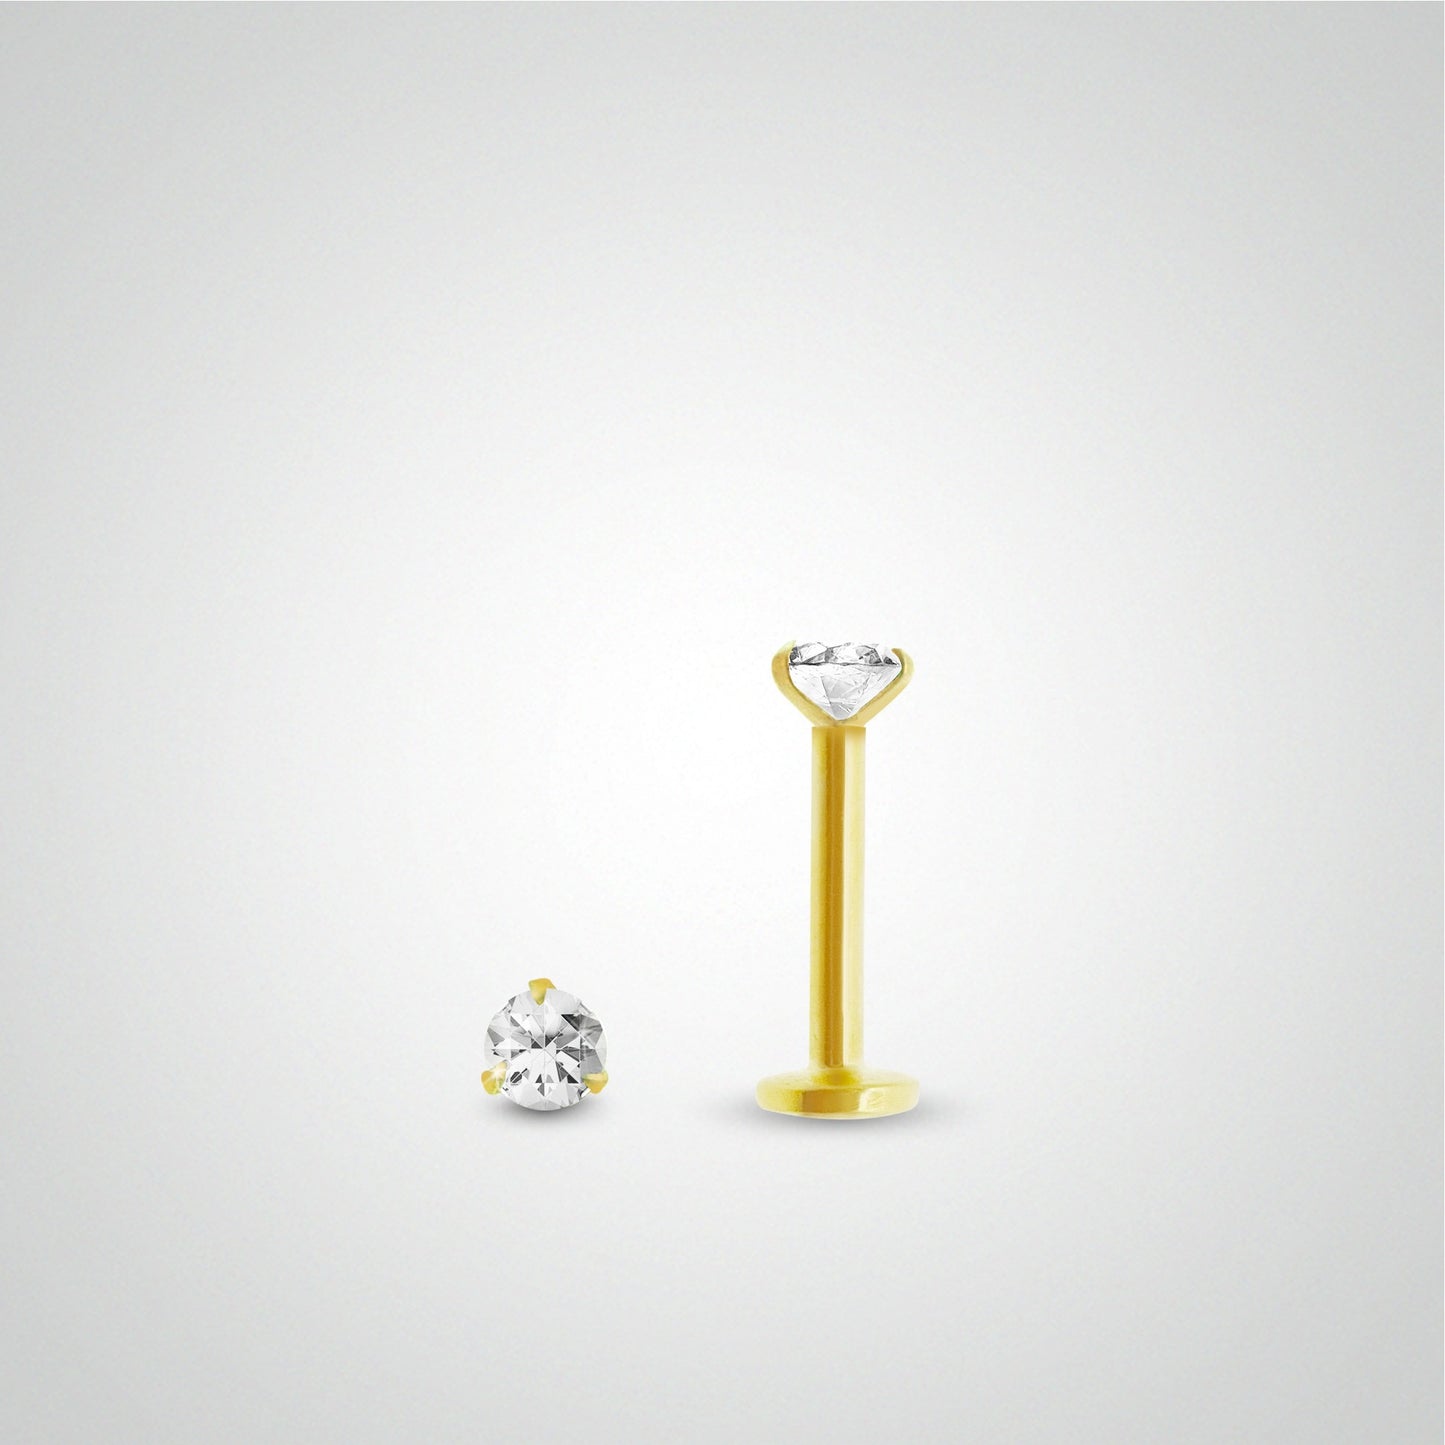 Boucle d'oreille or jaune avec diamant 0,05 carats